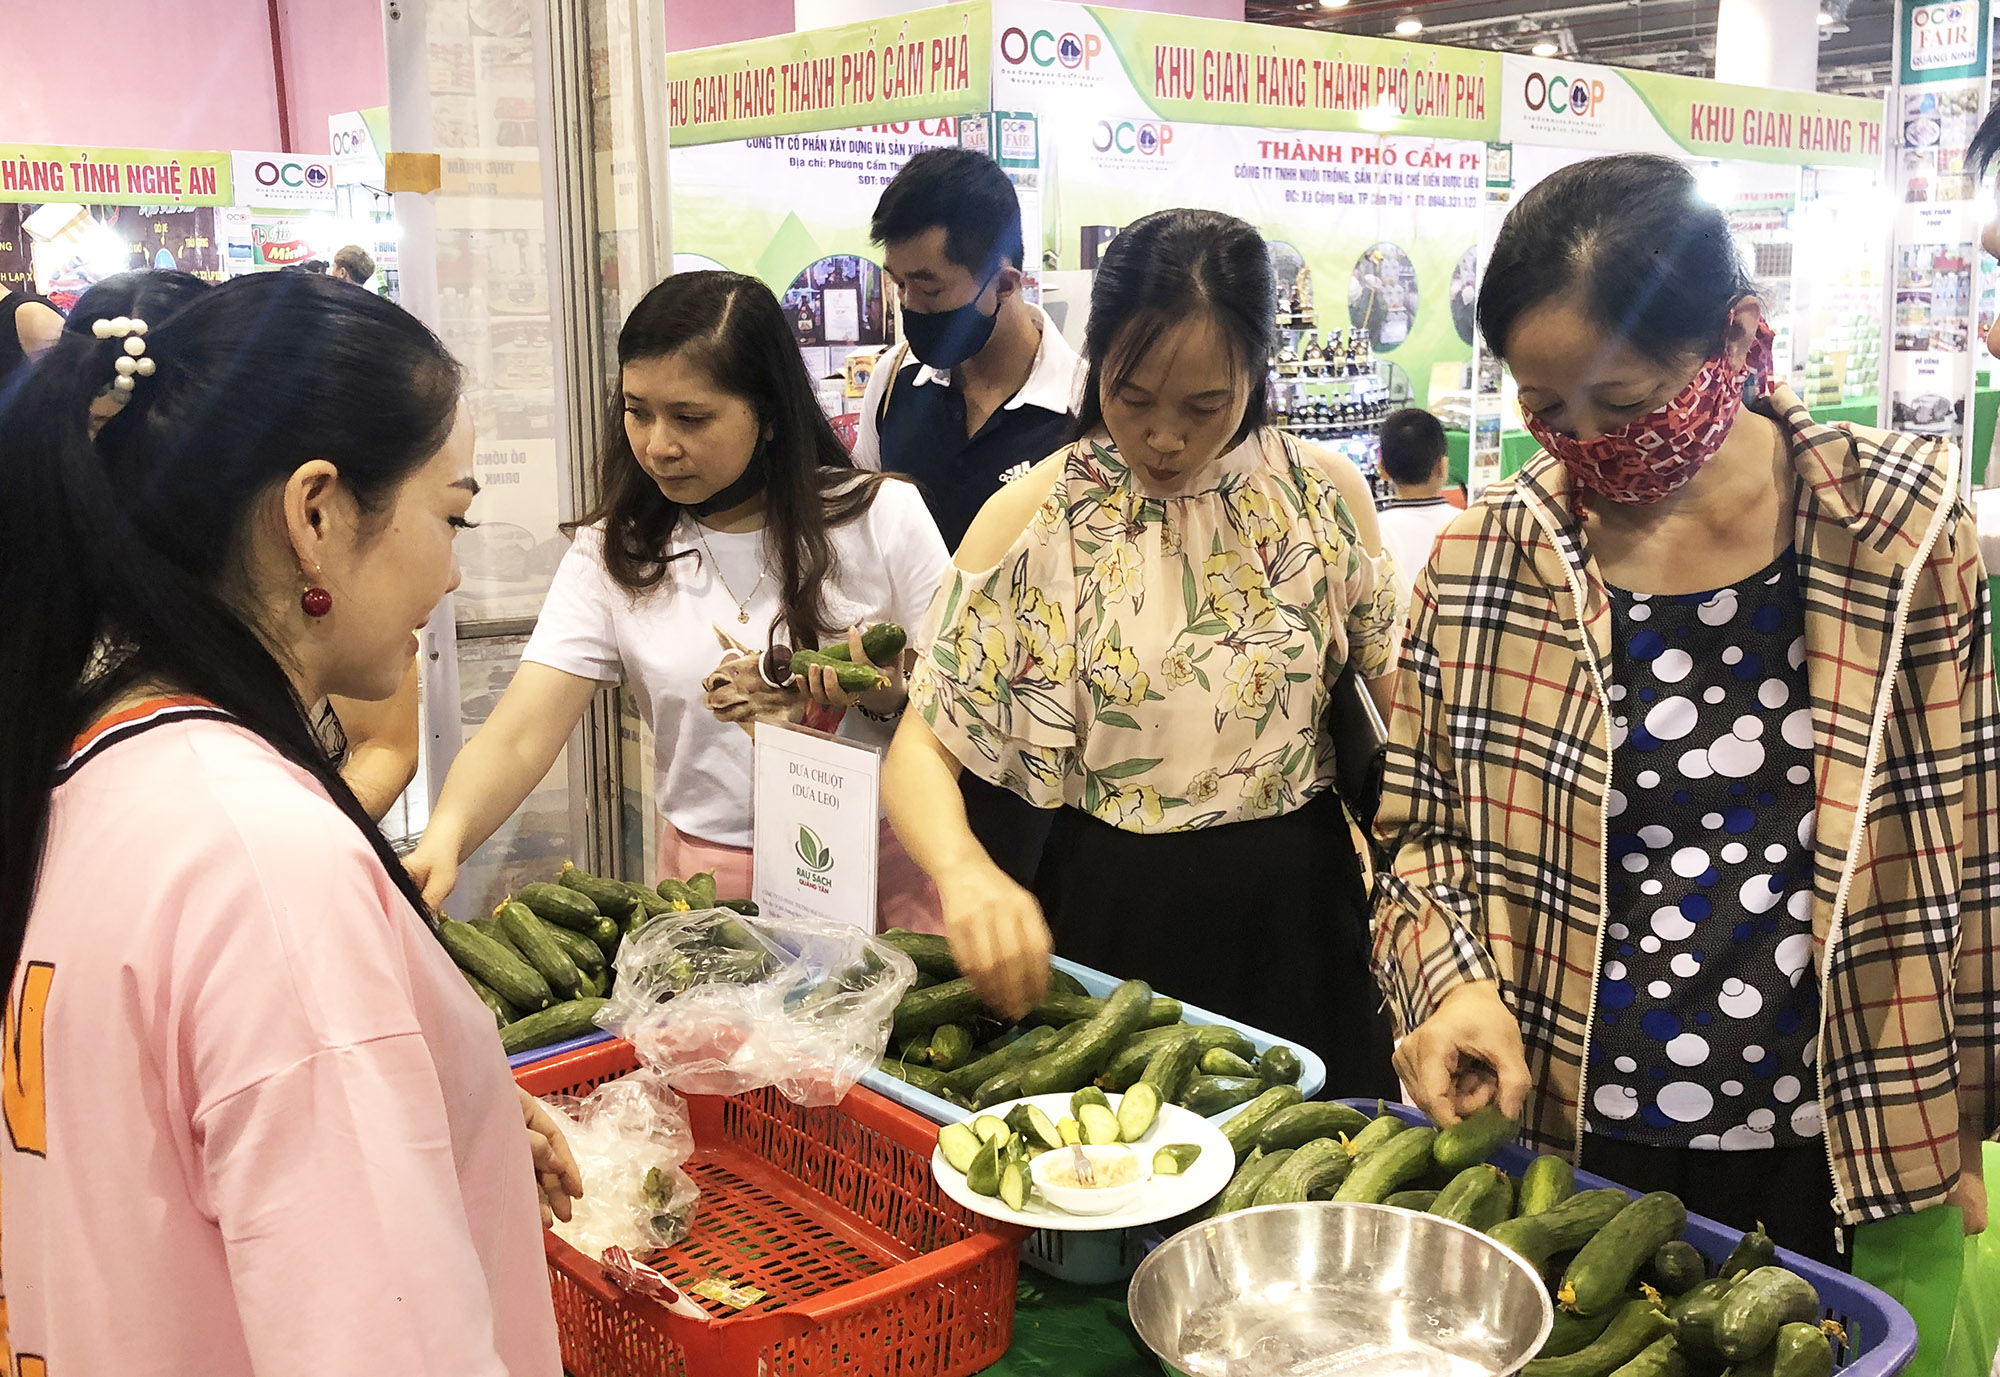 Nhiều sản phẩm từ nông nghiệp của các địa phương tham gia Hội chợ OCOP - Hè 2020